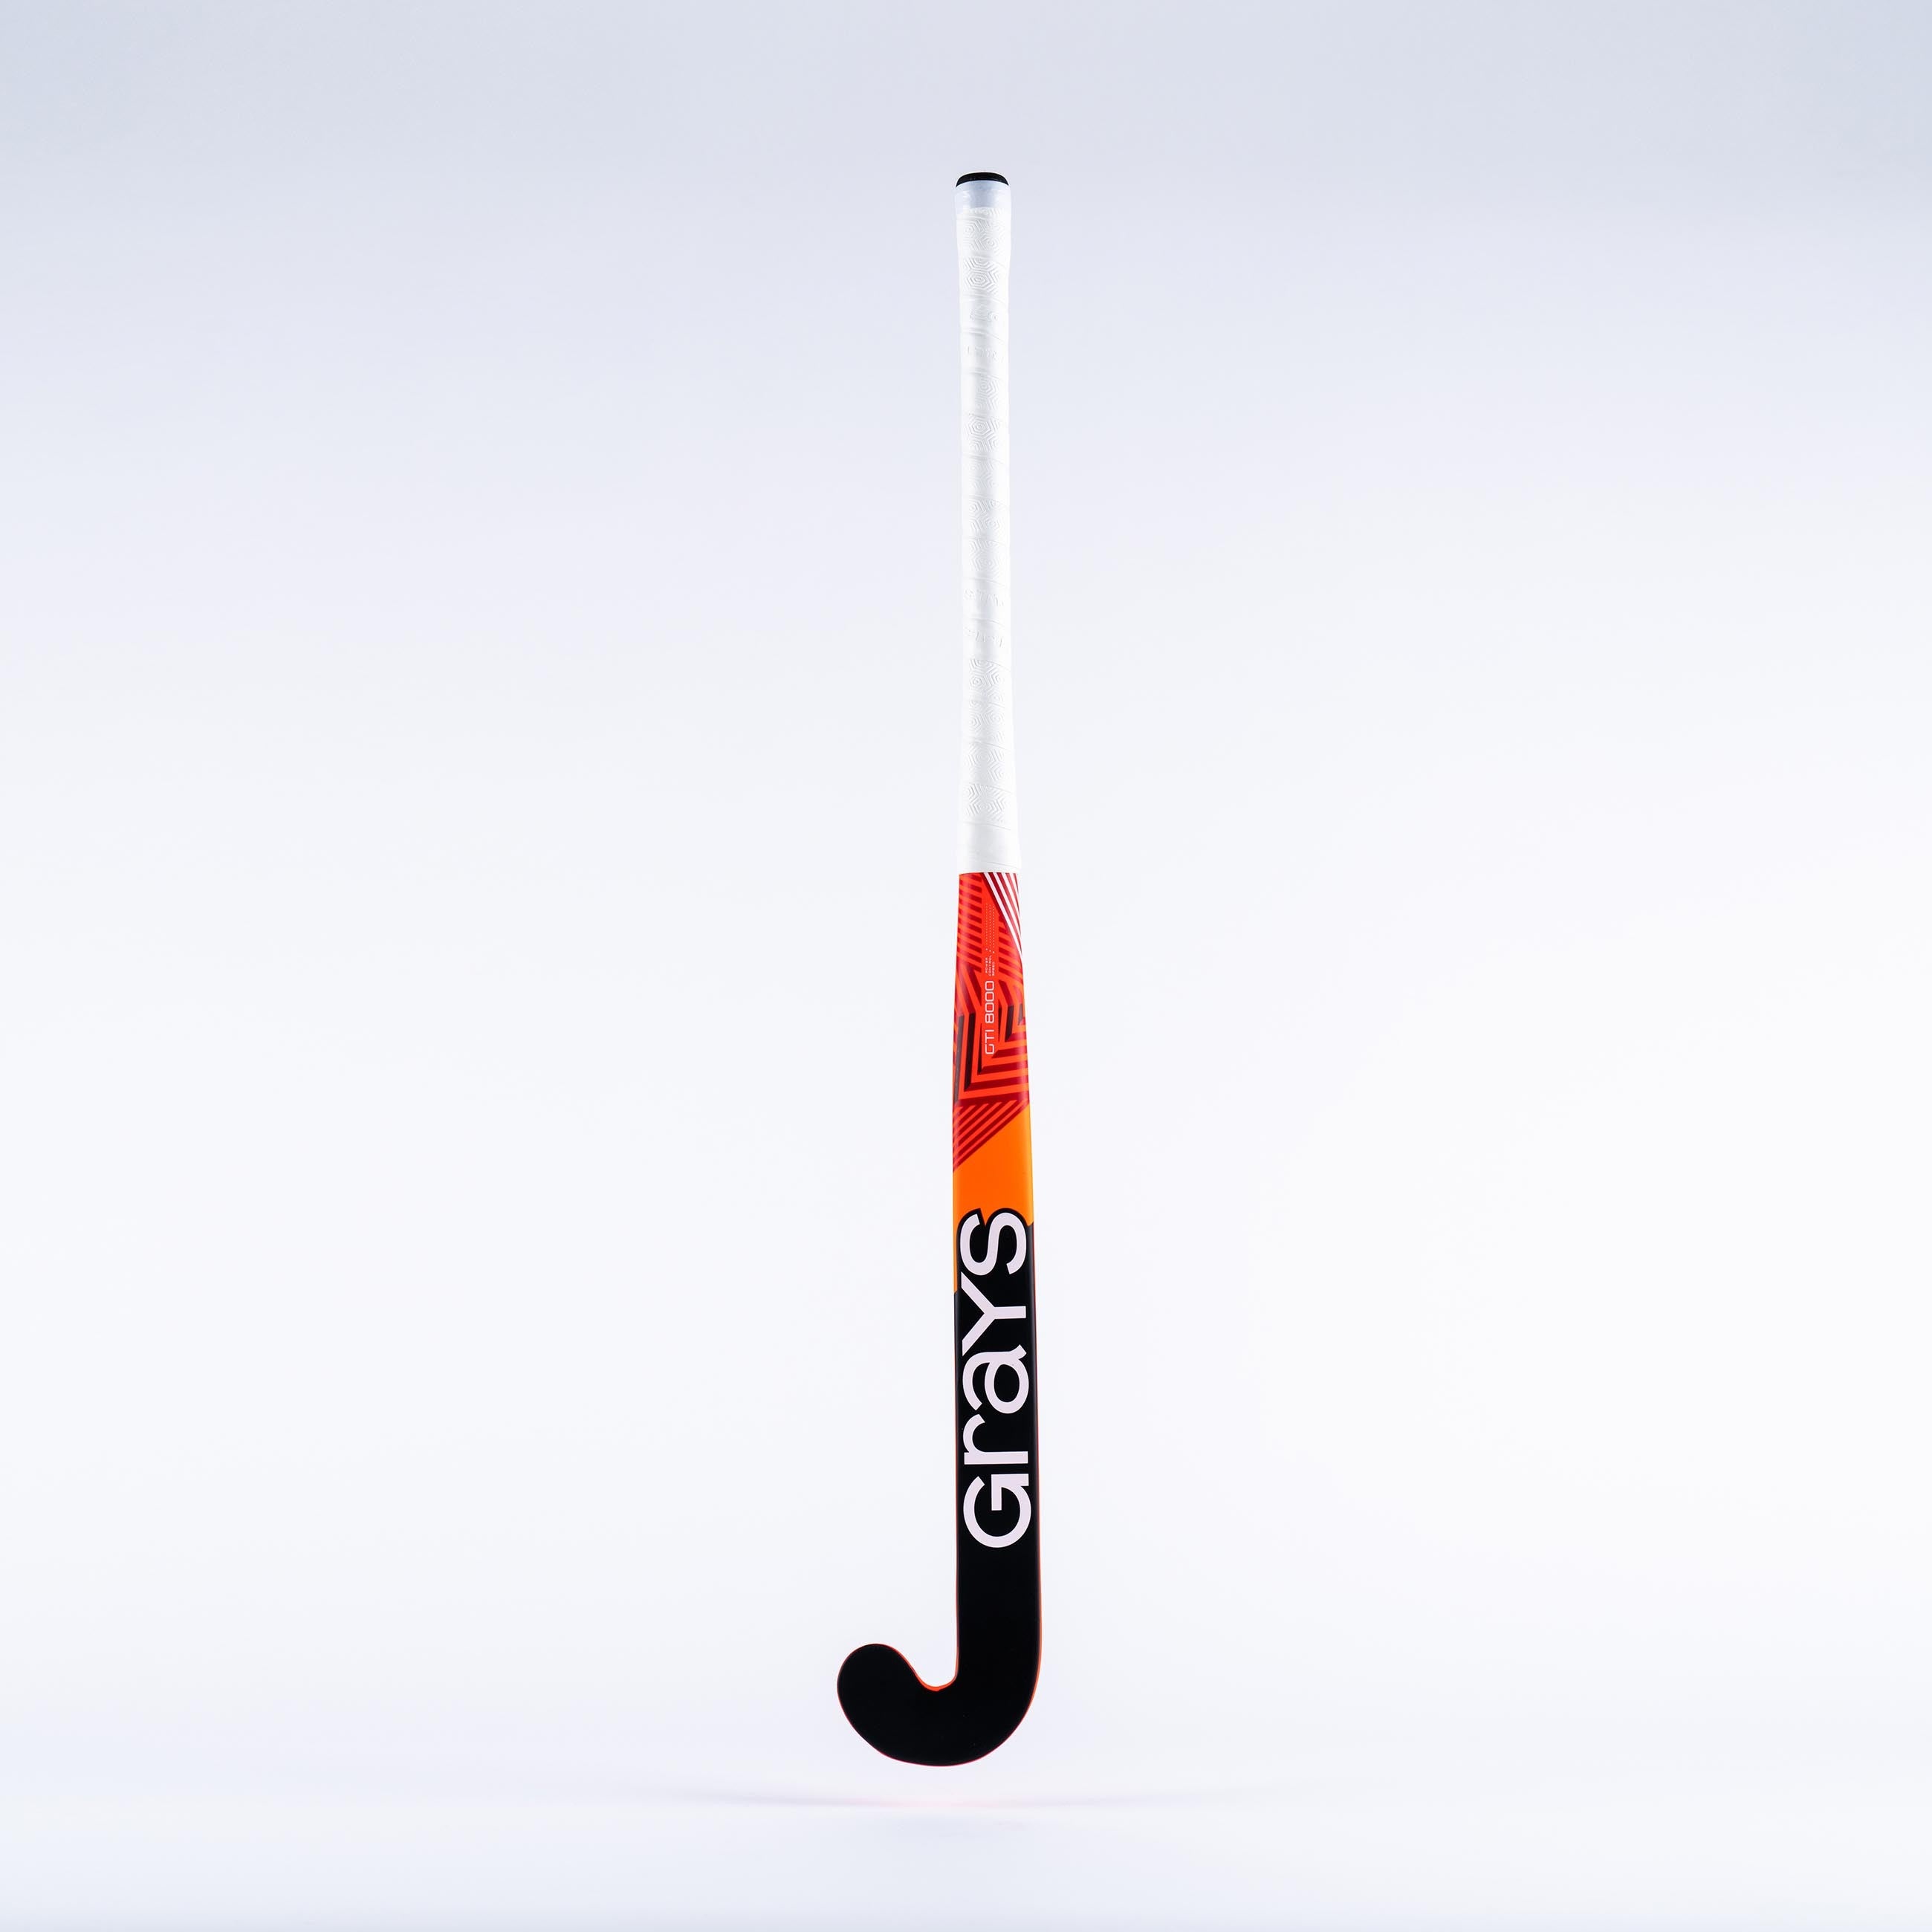 GTi8000 Jumbow Composite Indoor Hockey Stick